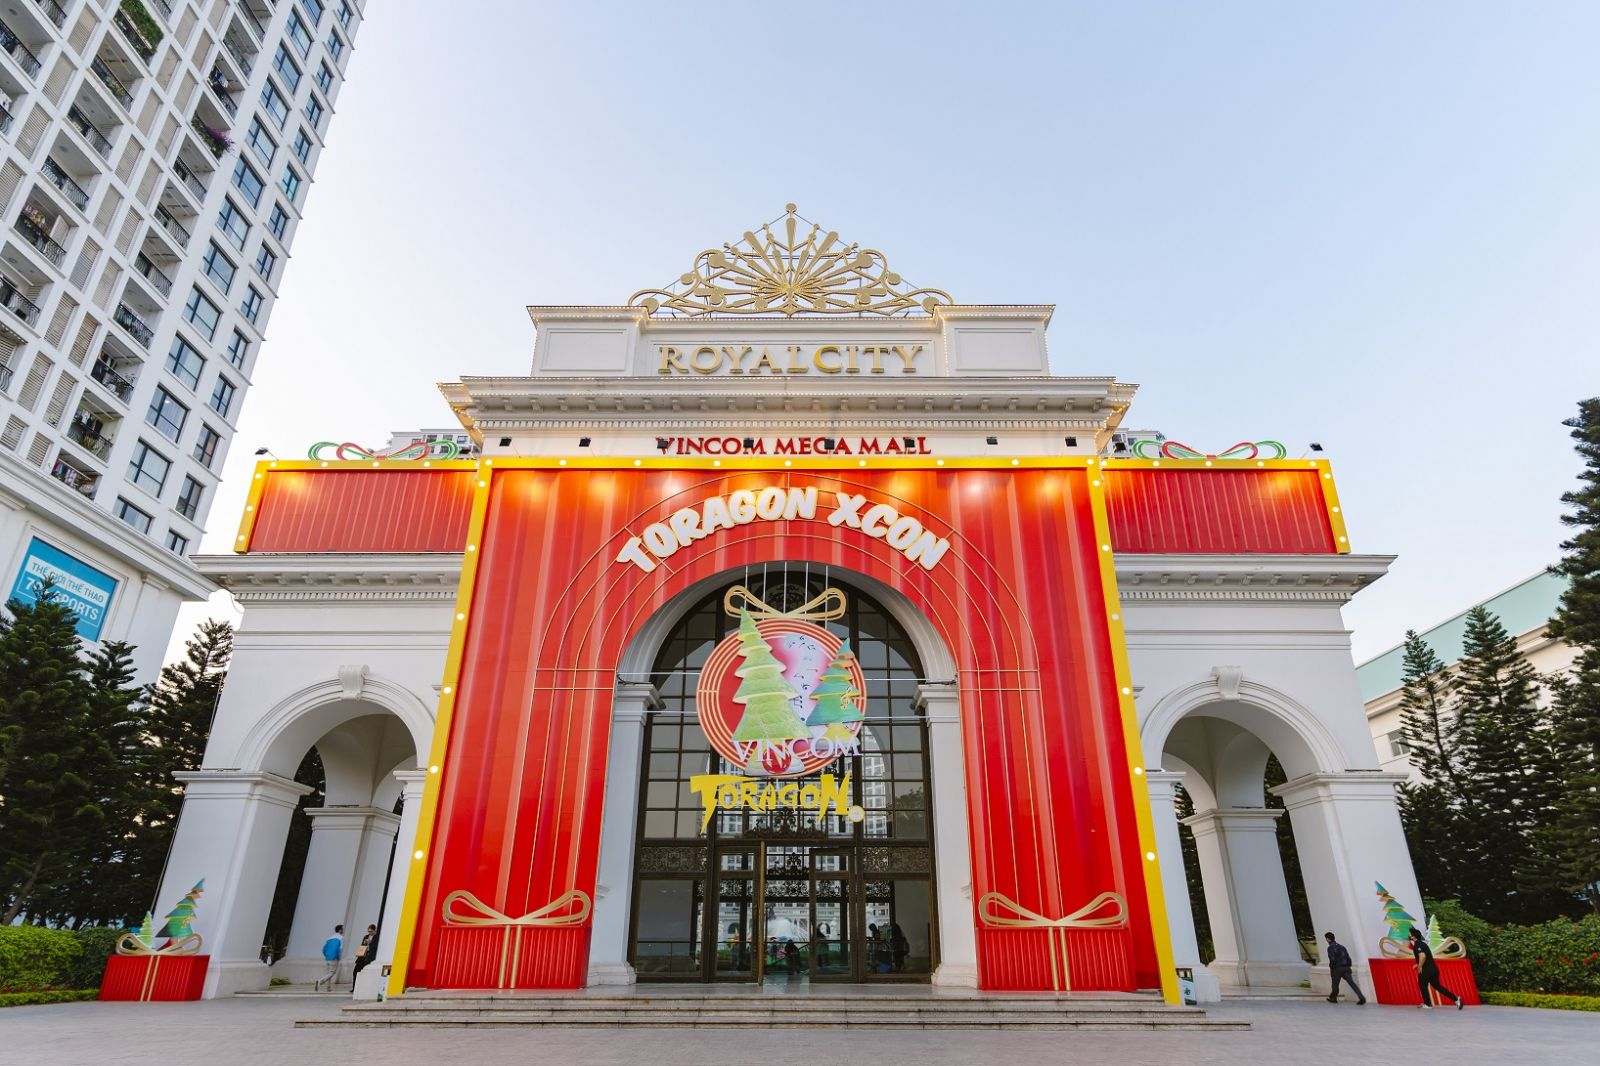 Hội chợ Art toy Giáng sinh đầu tiên tại Việt Nam sẵn sàng chào đón khách hàng